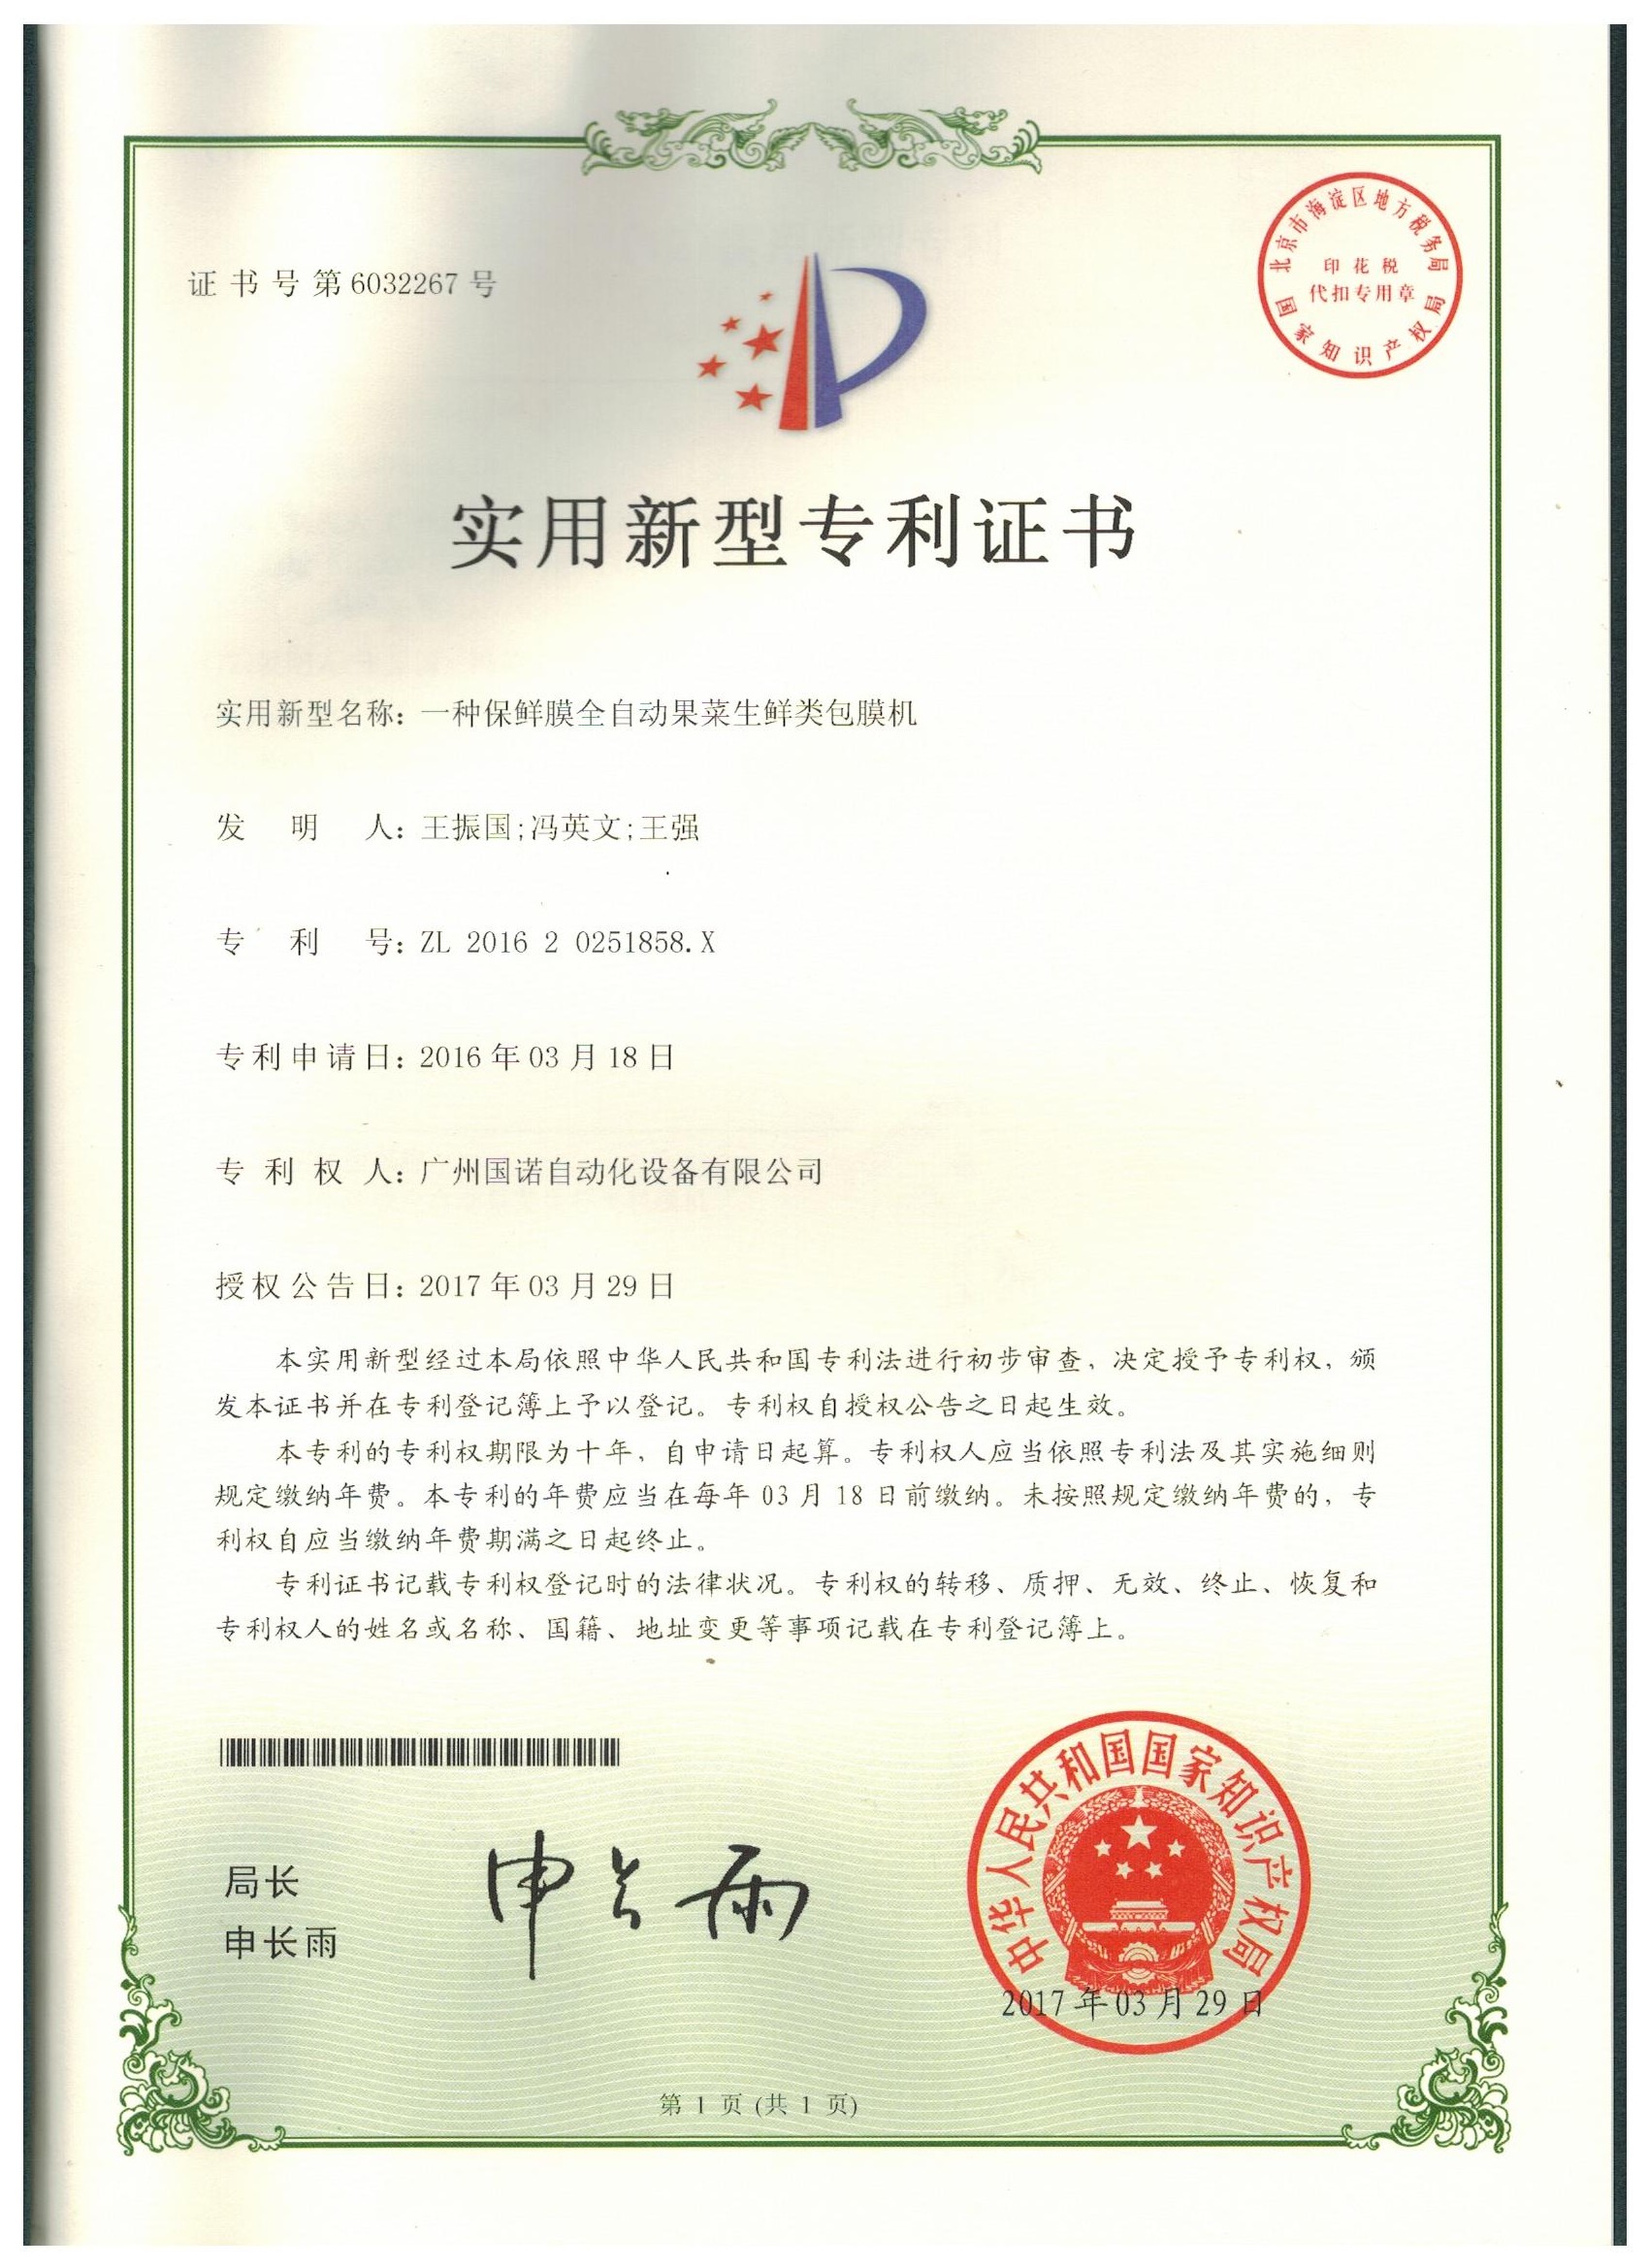 Side Sealing Certificate